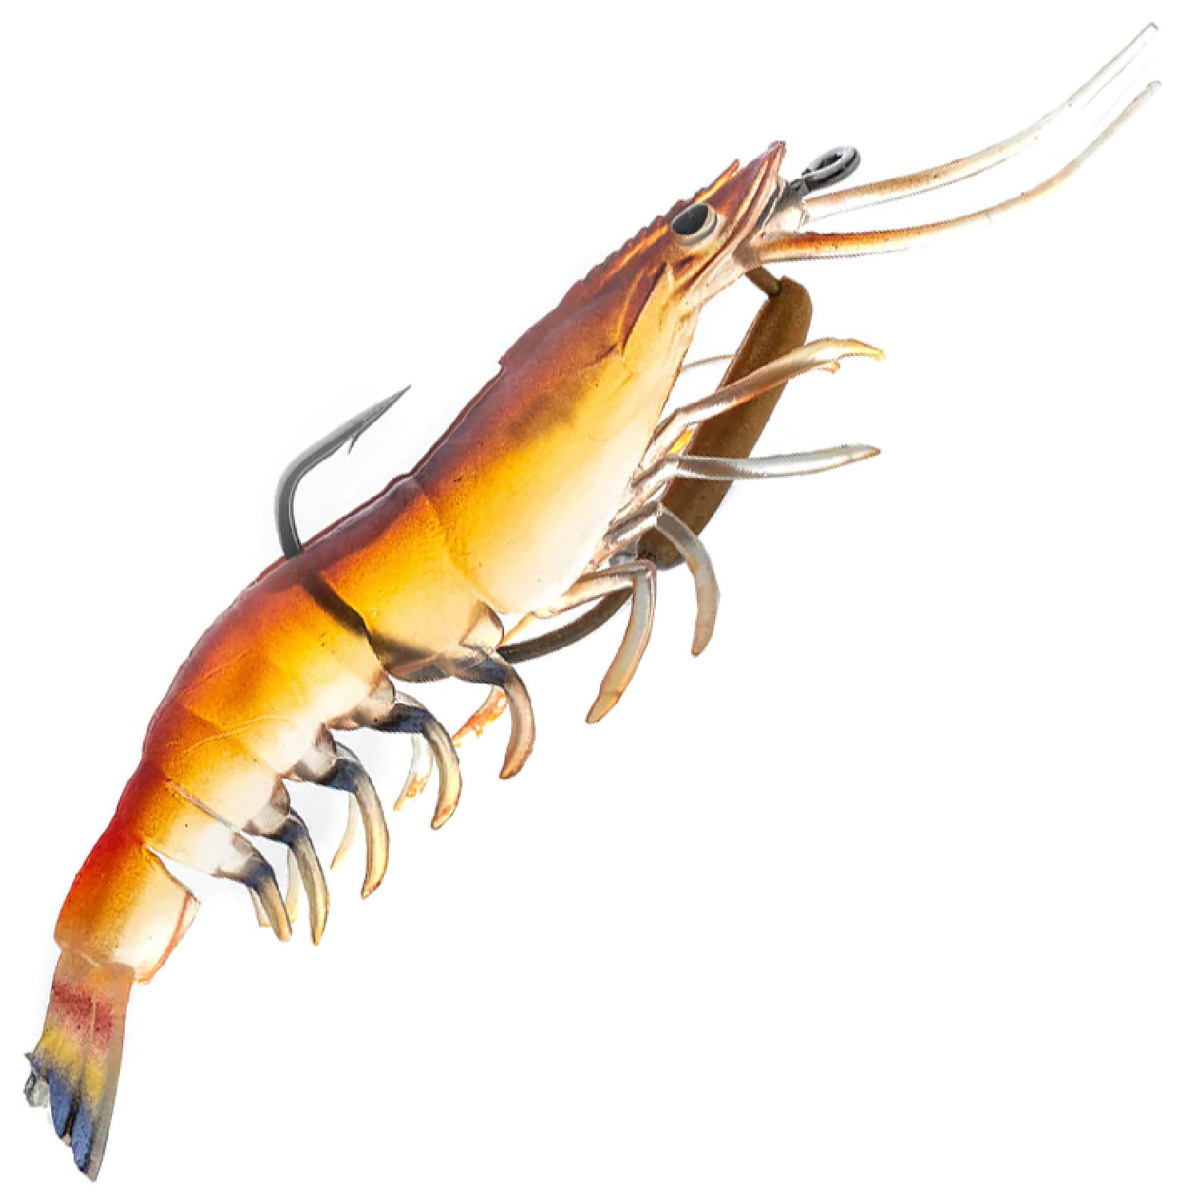 https://www.sportsmans.com/medias/chase-baits-flick-prawn-soft-shrimp-bait-native-prawn-34oz-4-910in-1790858-1.jpg?context=bWFzdGVyfGltYWdlc3wxNDg1MzF8aW1hZ2UvanBlZ3xhR0UwTDJneU1pOHhNRGswTnpRME1UQXpNekkwTmk4eE56a3dPRFU0TFRGZlltRnpaUzFqYjI1MlpYSnphVzl1Um05eWJXRjBYekV5TURBdFkyOXVkbVZ5YzJsdmJrWnZjbTFoZEF8MmU3YTUzMmYwNWZhZTdjYWI0MjUxMzFkNWUxYmMzMmUyMDZjNWJlMWQ0ZjM3NzZjMWZkZjQwMjBhMTFlNmI4ZQ